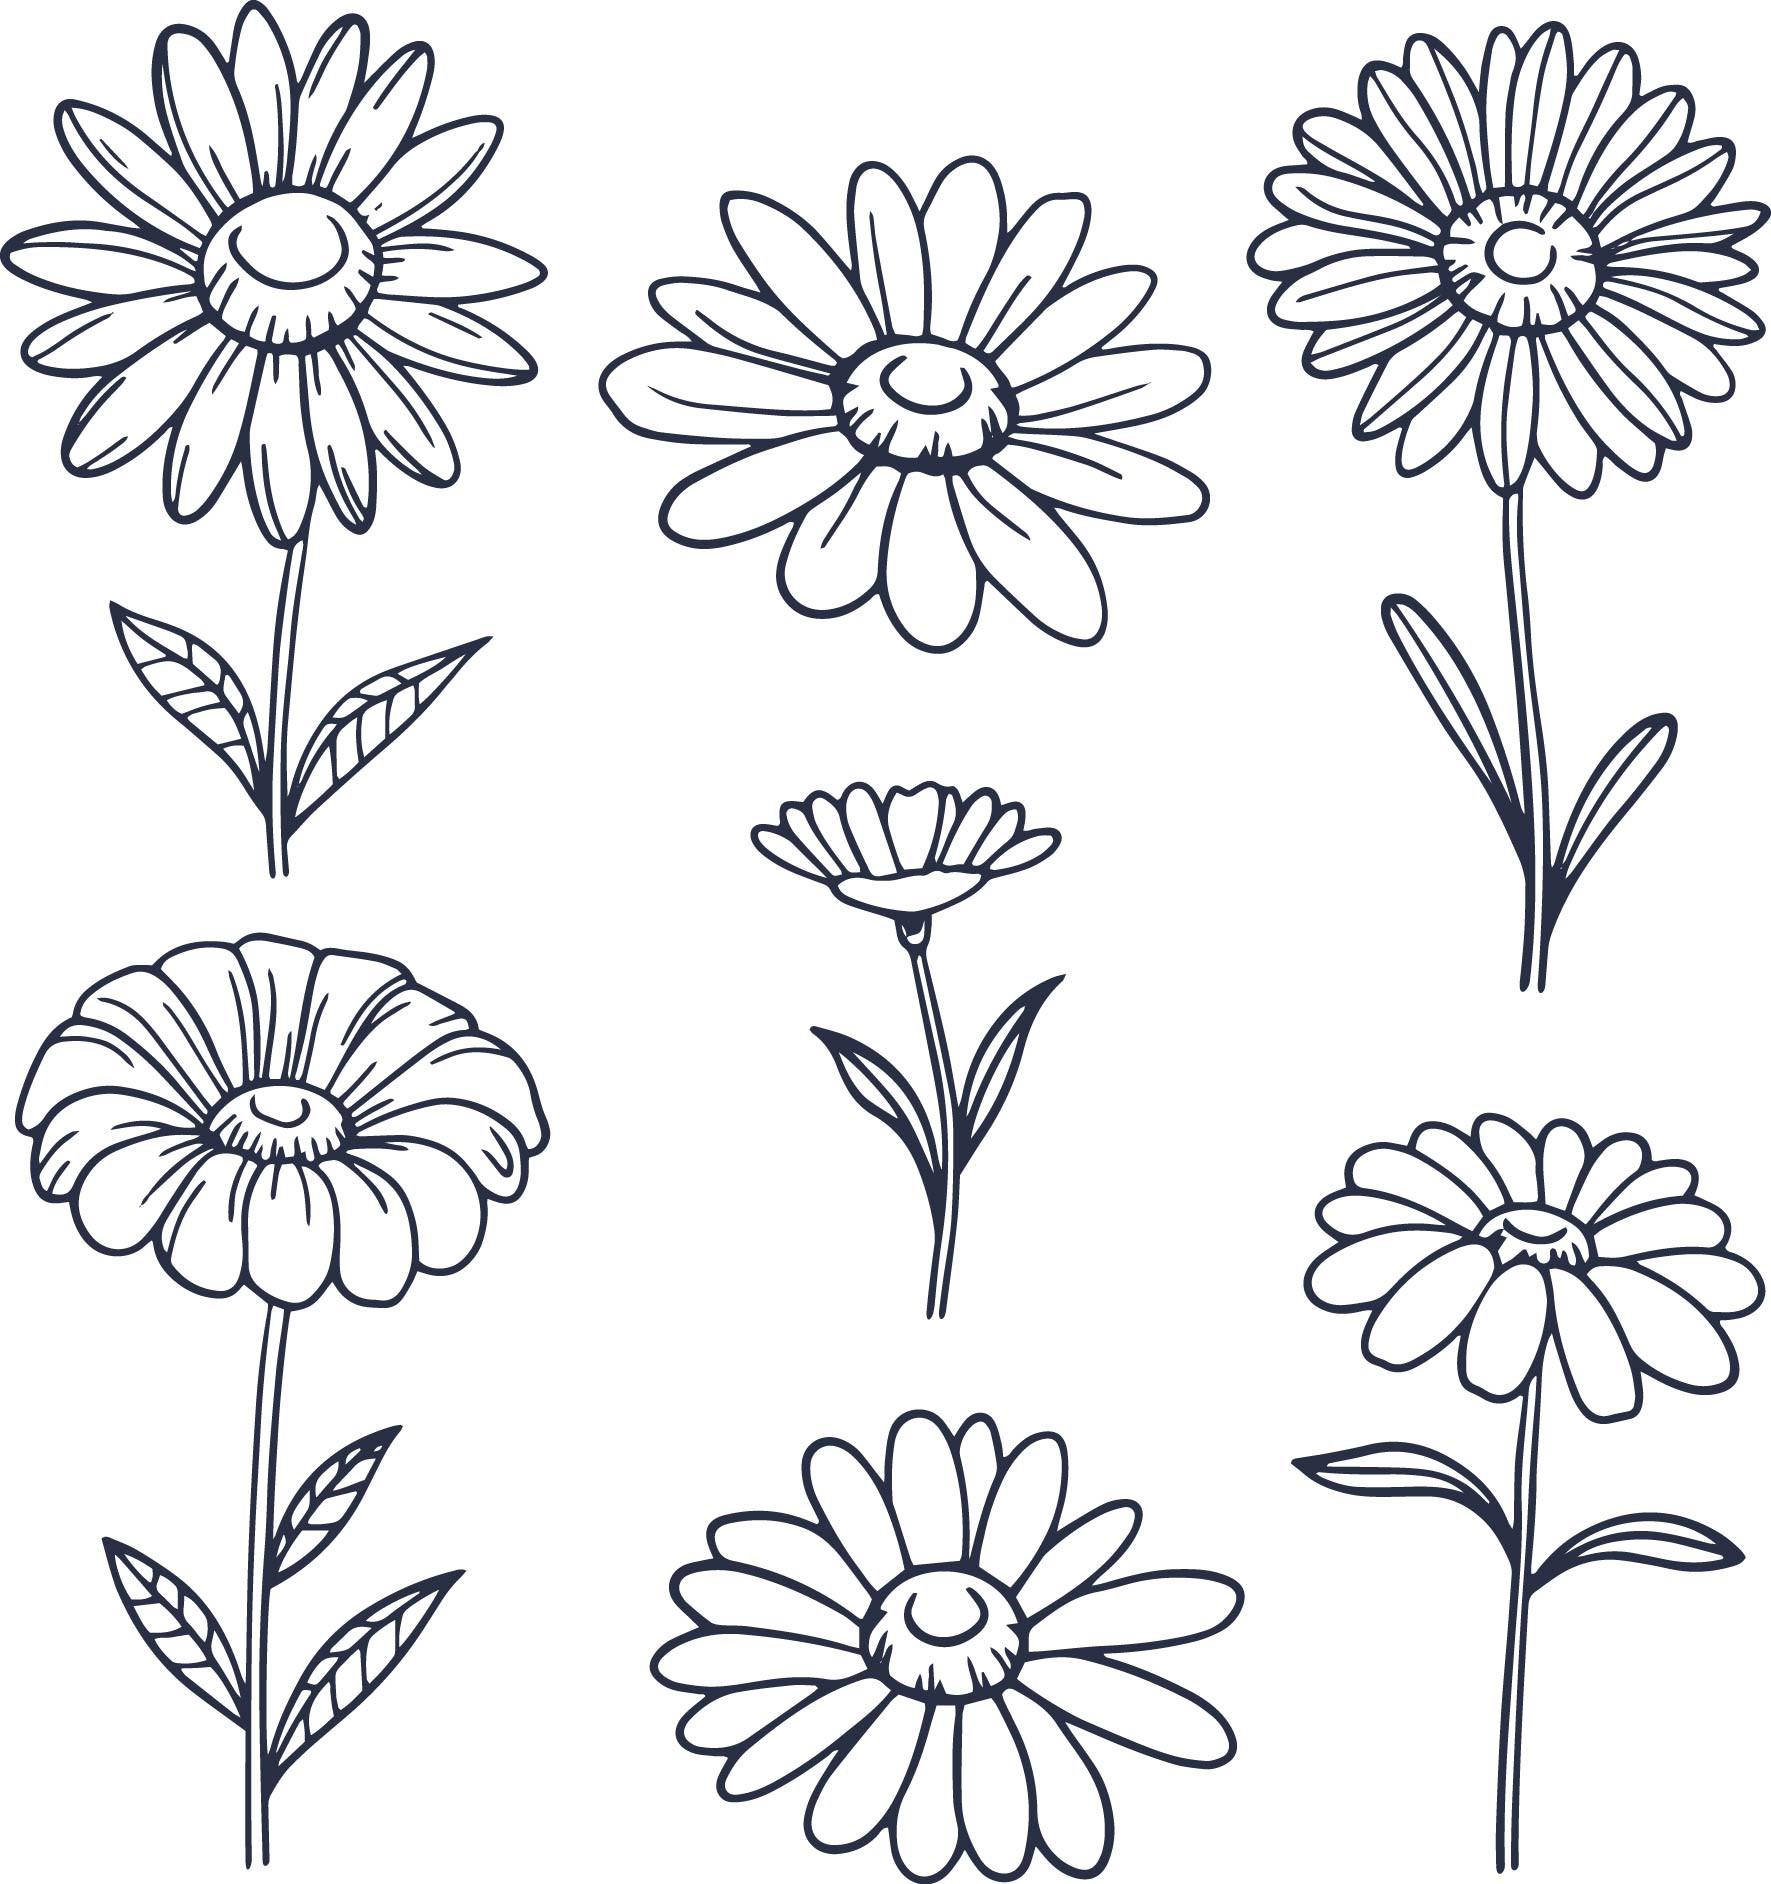 Раскраска для детей: семь сказочных цветочков